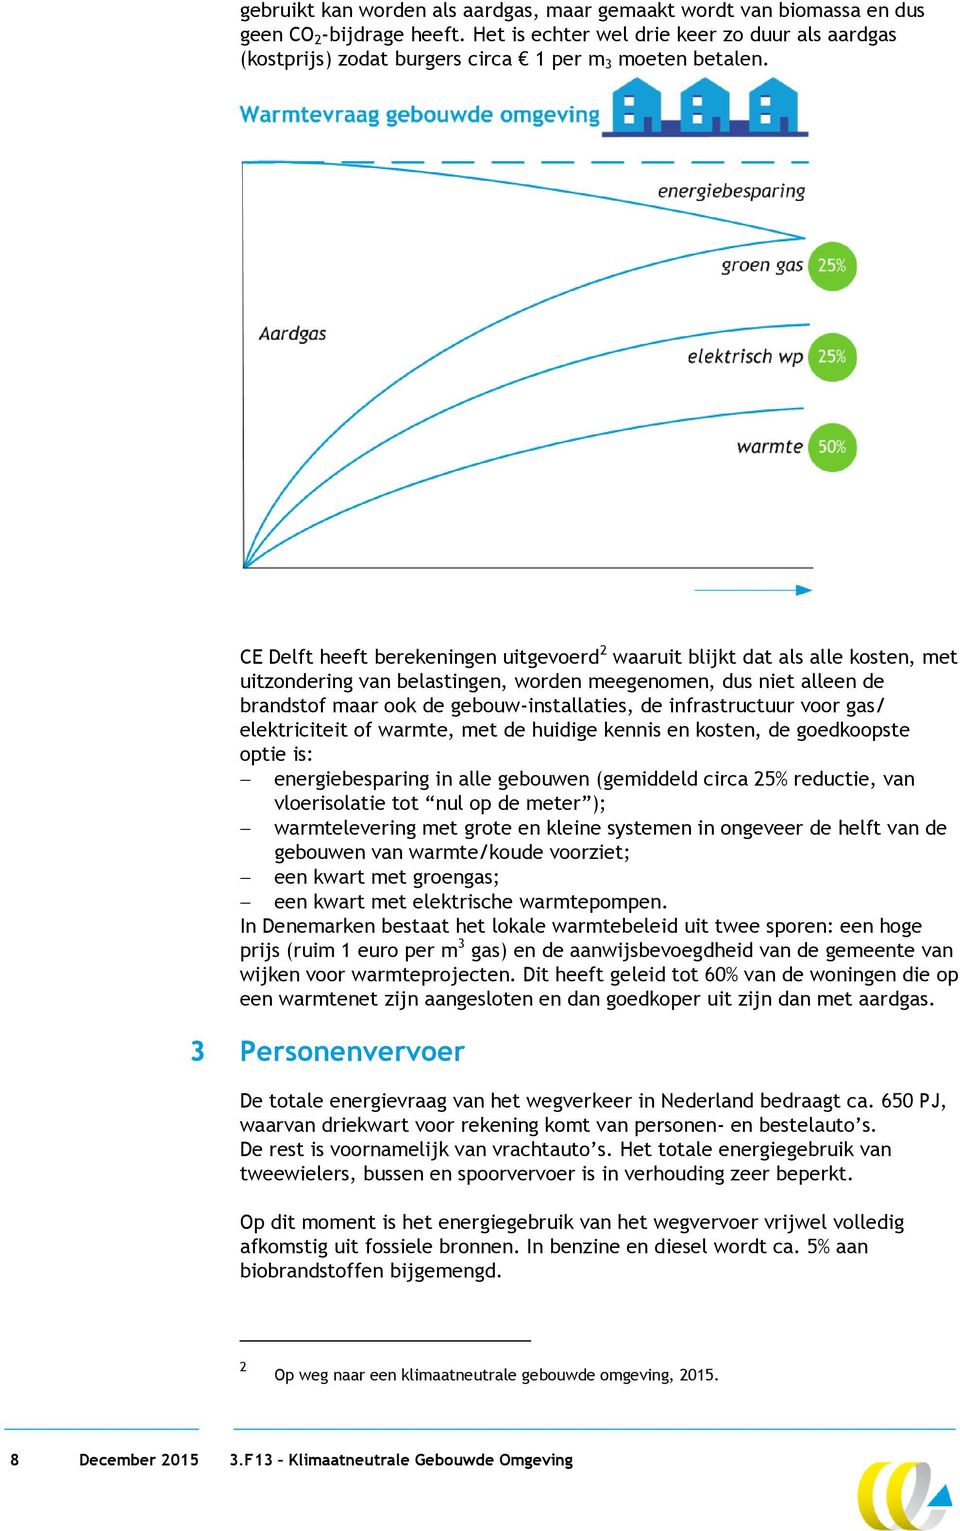 CE Delft heeft berekeningen uitgevoerd 2 waaruit blijkt dat als alle kosten, met uitzondering van belastingen, worden meegenomen, dus niet alleen de brandstof maar ook de gebouw-installaties, de